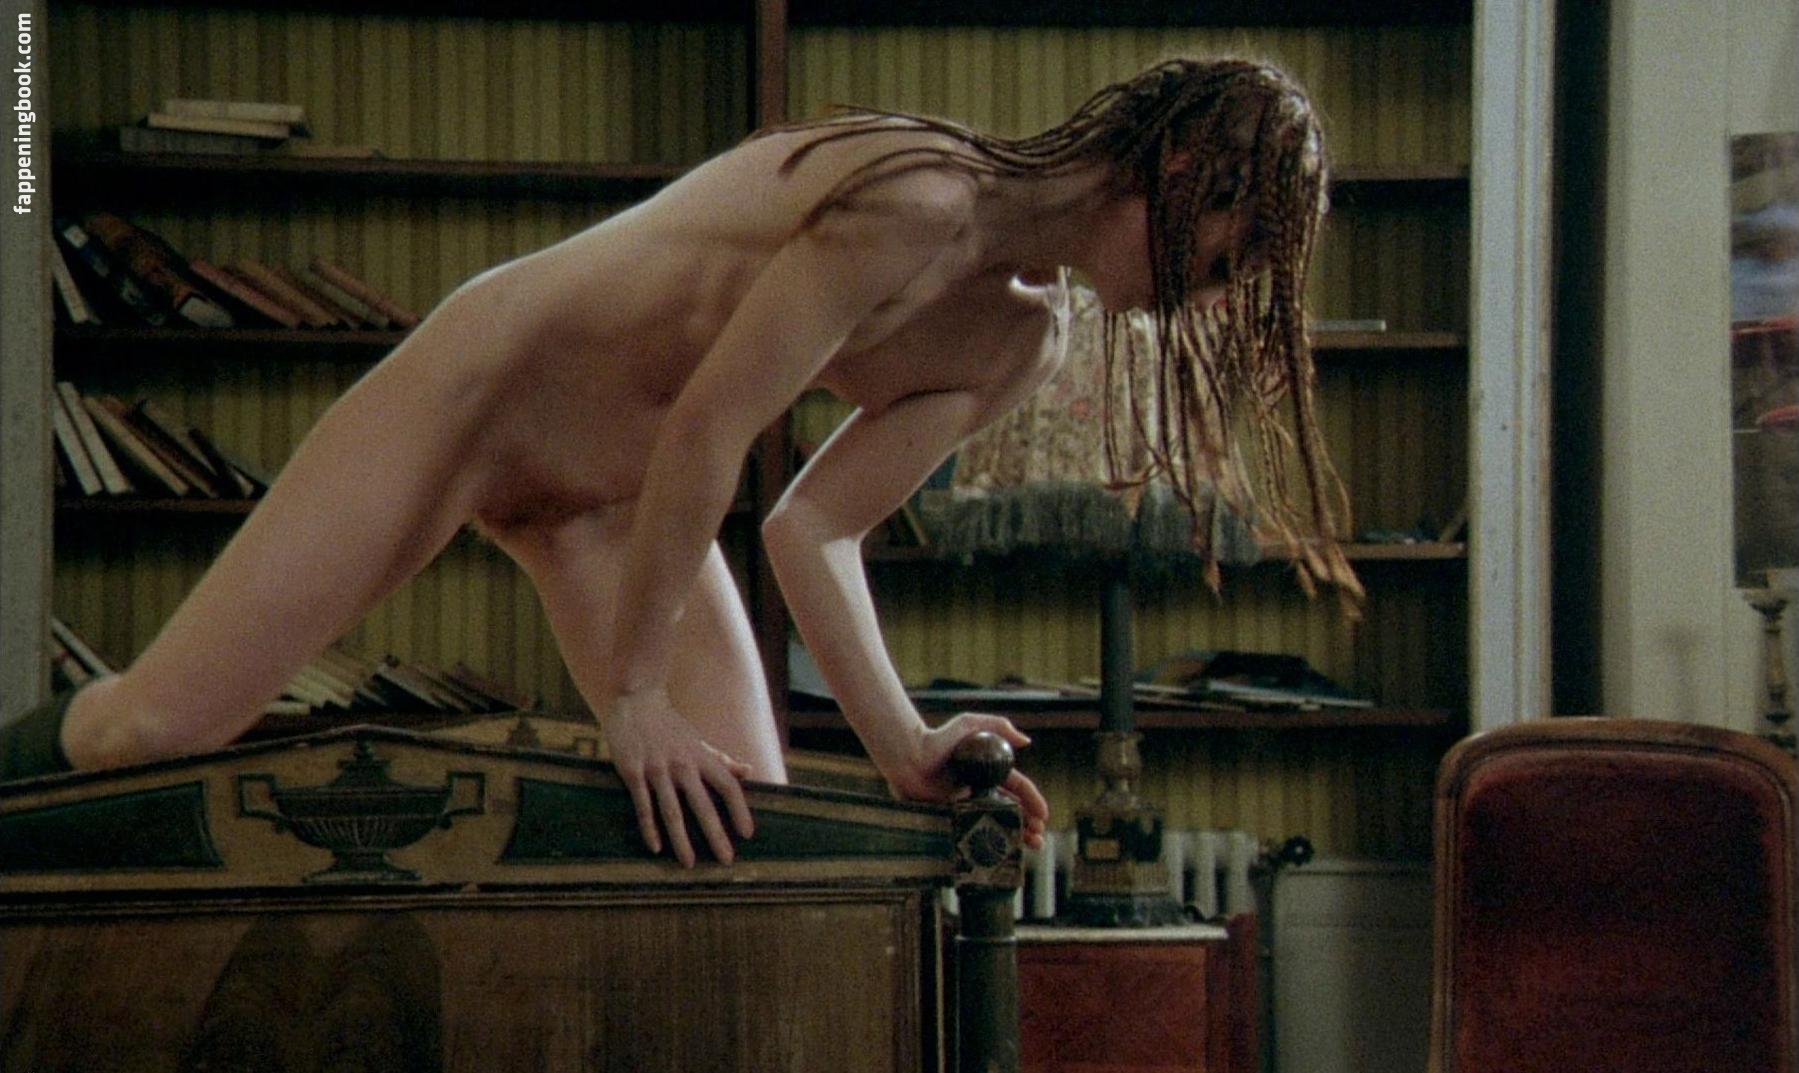 Nude Roles in Movies: Le voyage de noces (1976), The Beast (1975) .